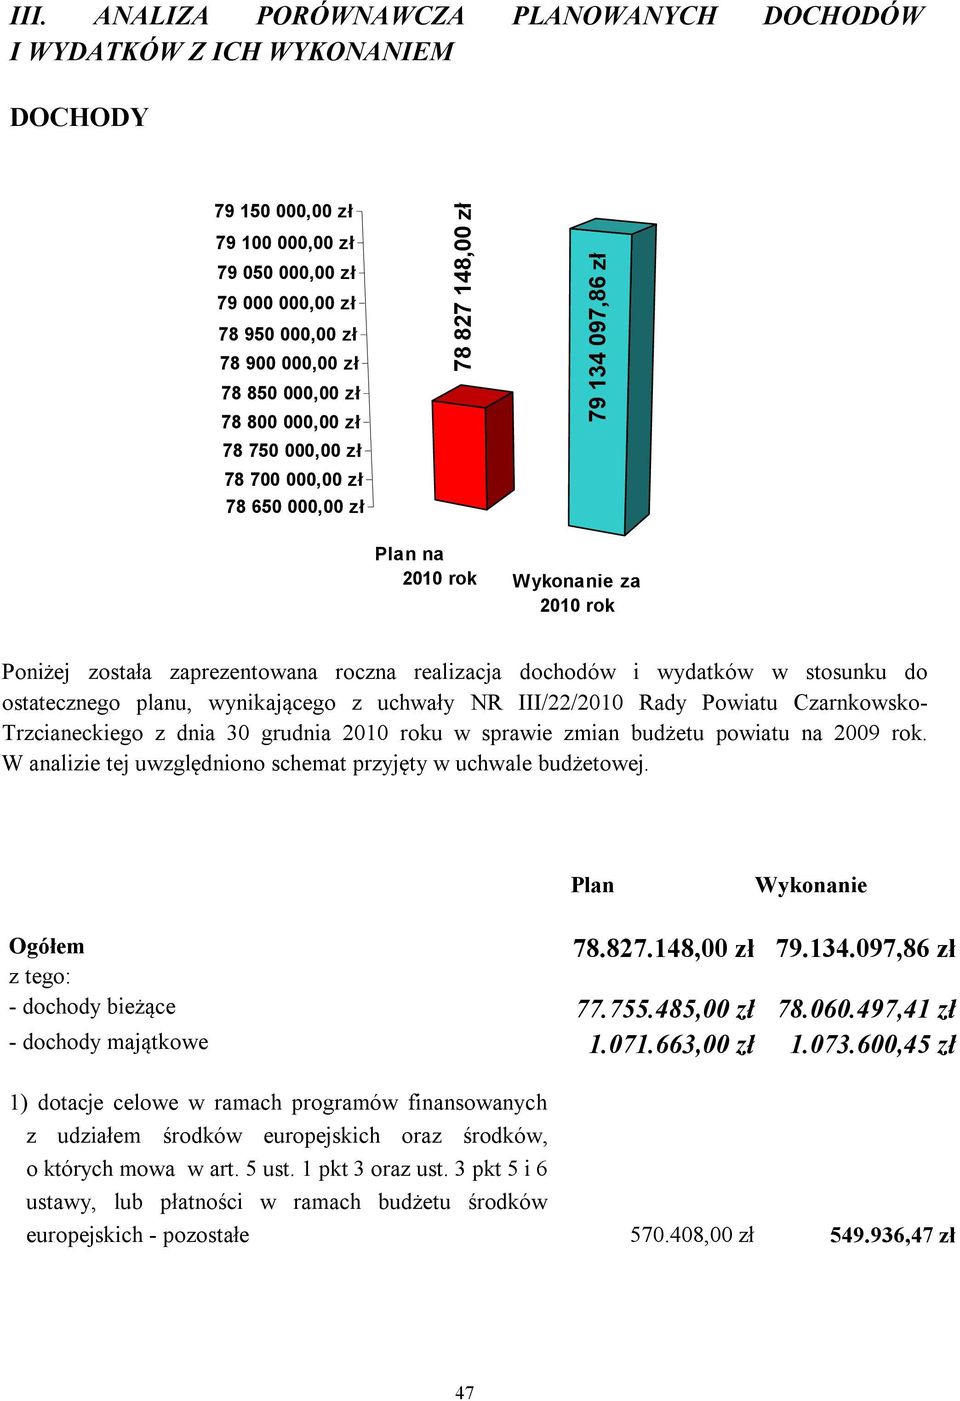 dochodów i wydatków w stosunku do ostatecznego planu, wynikającego z uchwały NR III/22/2010 Rady Powiatu Czarnkowsko- Trzcianeckiego z dnia 30 grudnia 2010 roku w sprawie zmian budżetu powiatu na